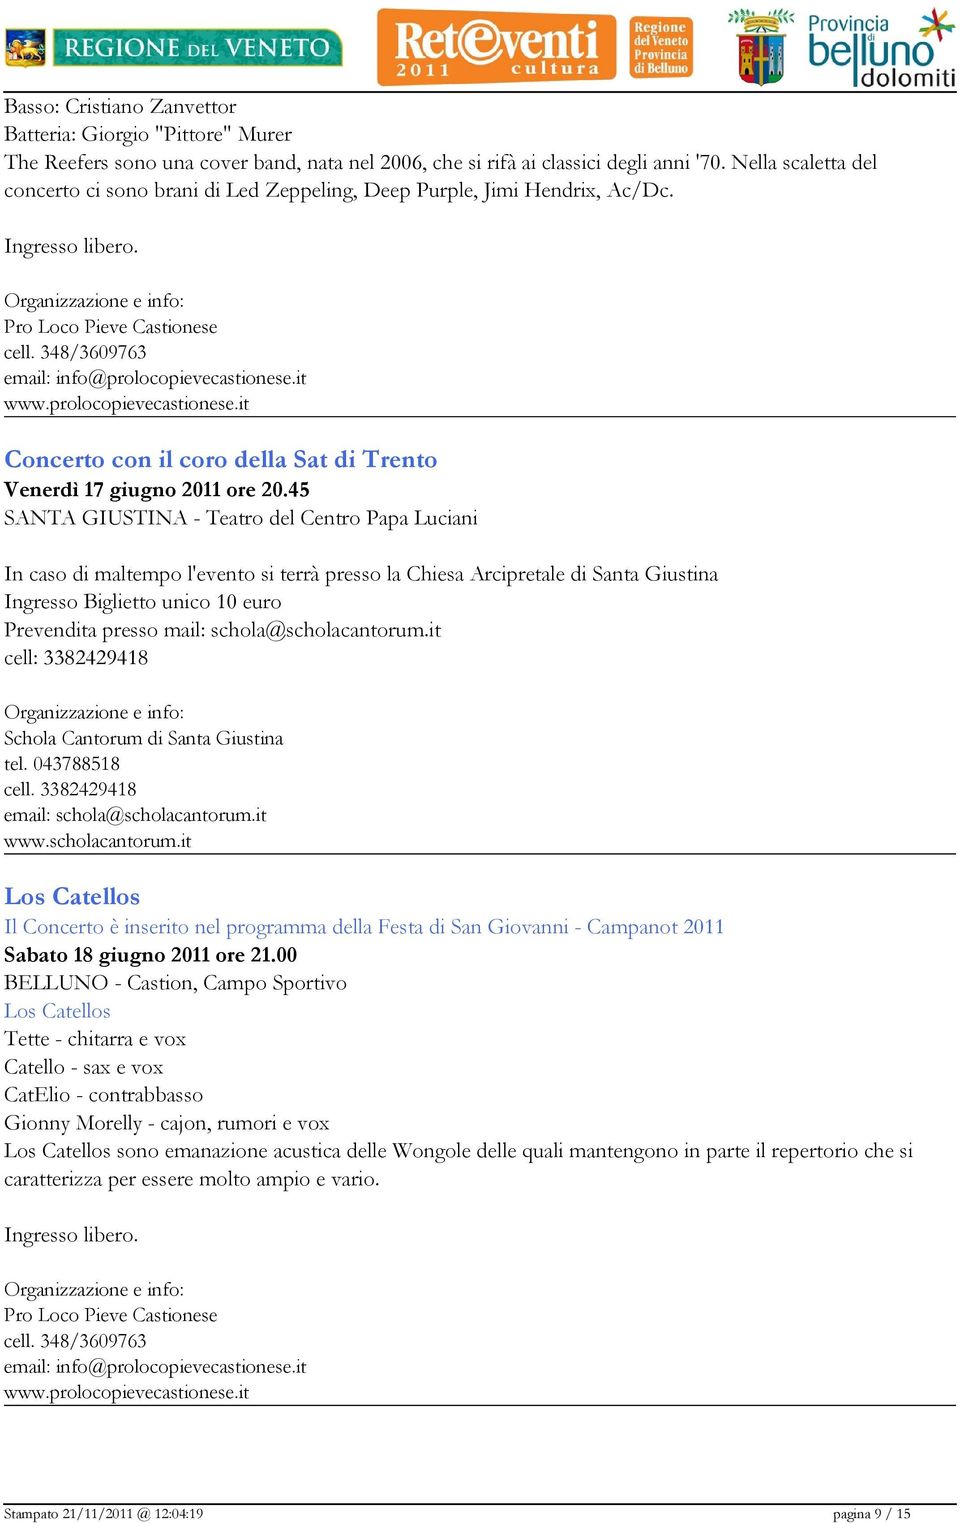 45 SANTA GIUSTINA - Teatro del Centro Papa Luciani In caso di maltempo l'evento si terrà presso la Chiesa Arcipretale di Santa Giustina Ingresso Biglietto unico 10 euro Prevendita presso mail: